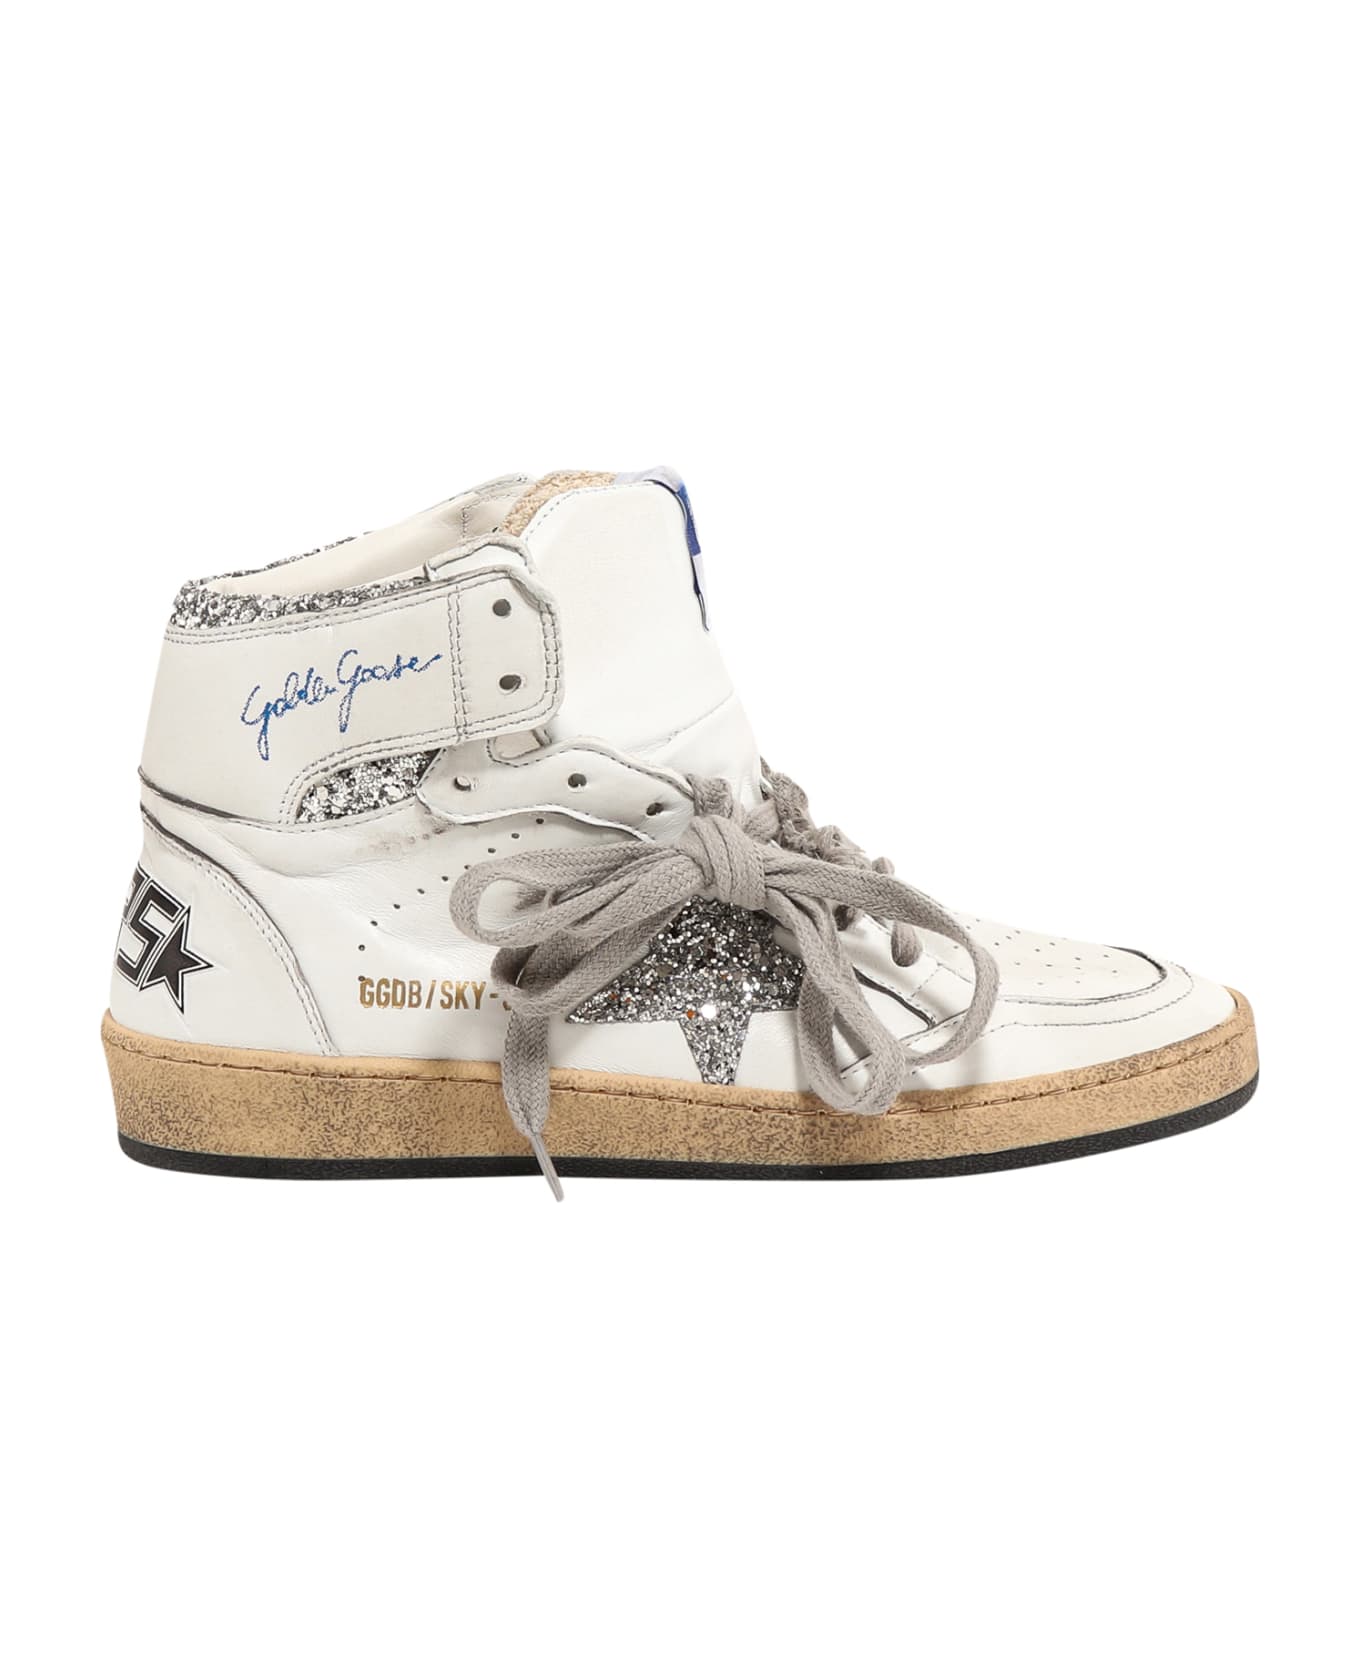 Golden Goose Sky Star Sneakers - White